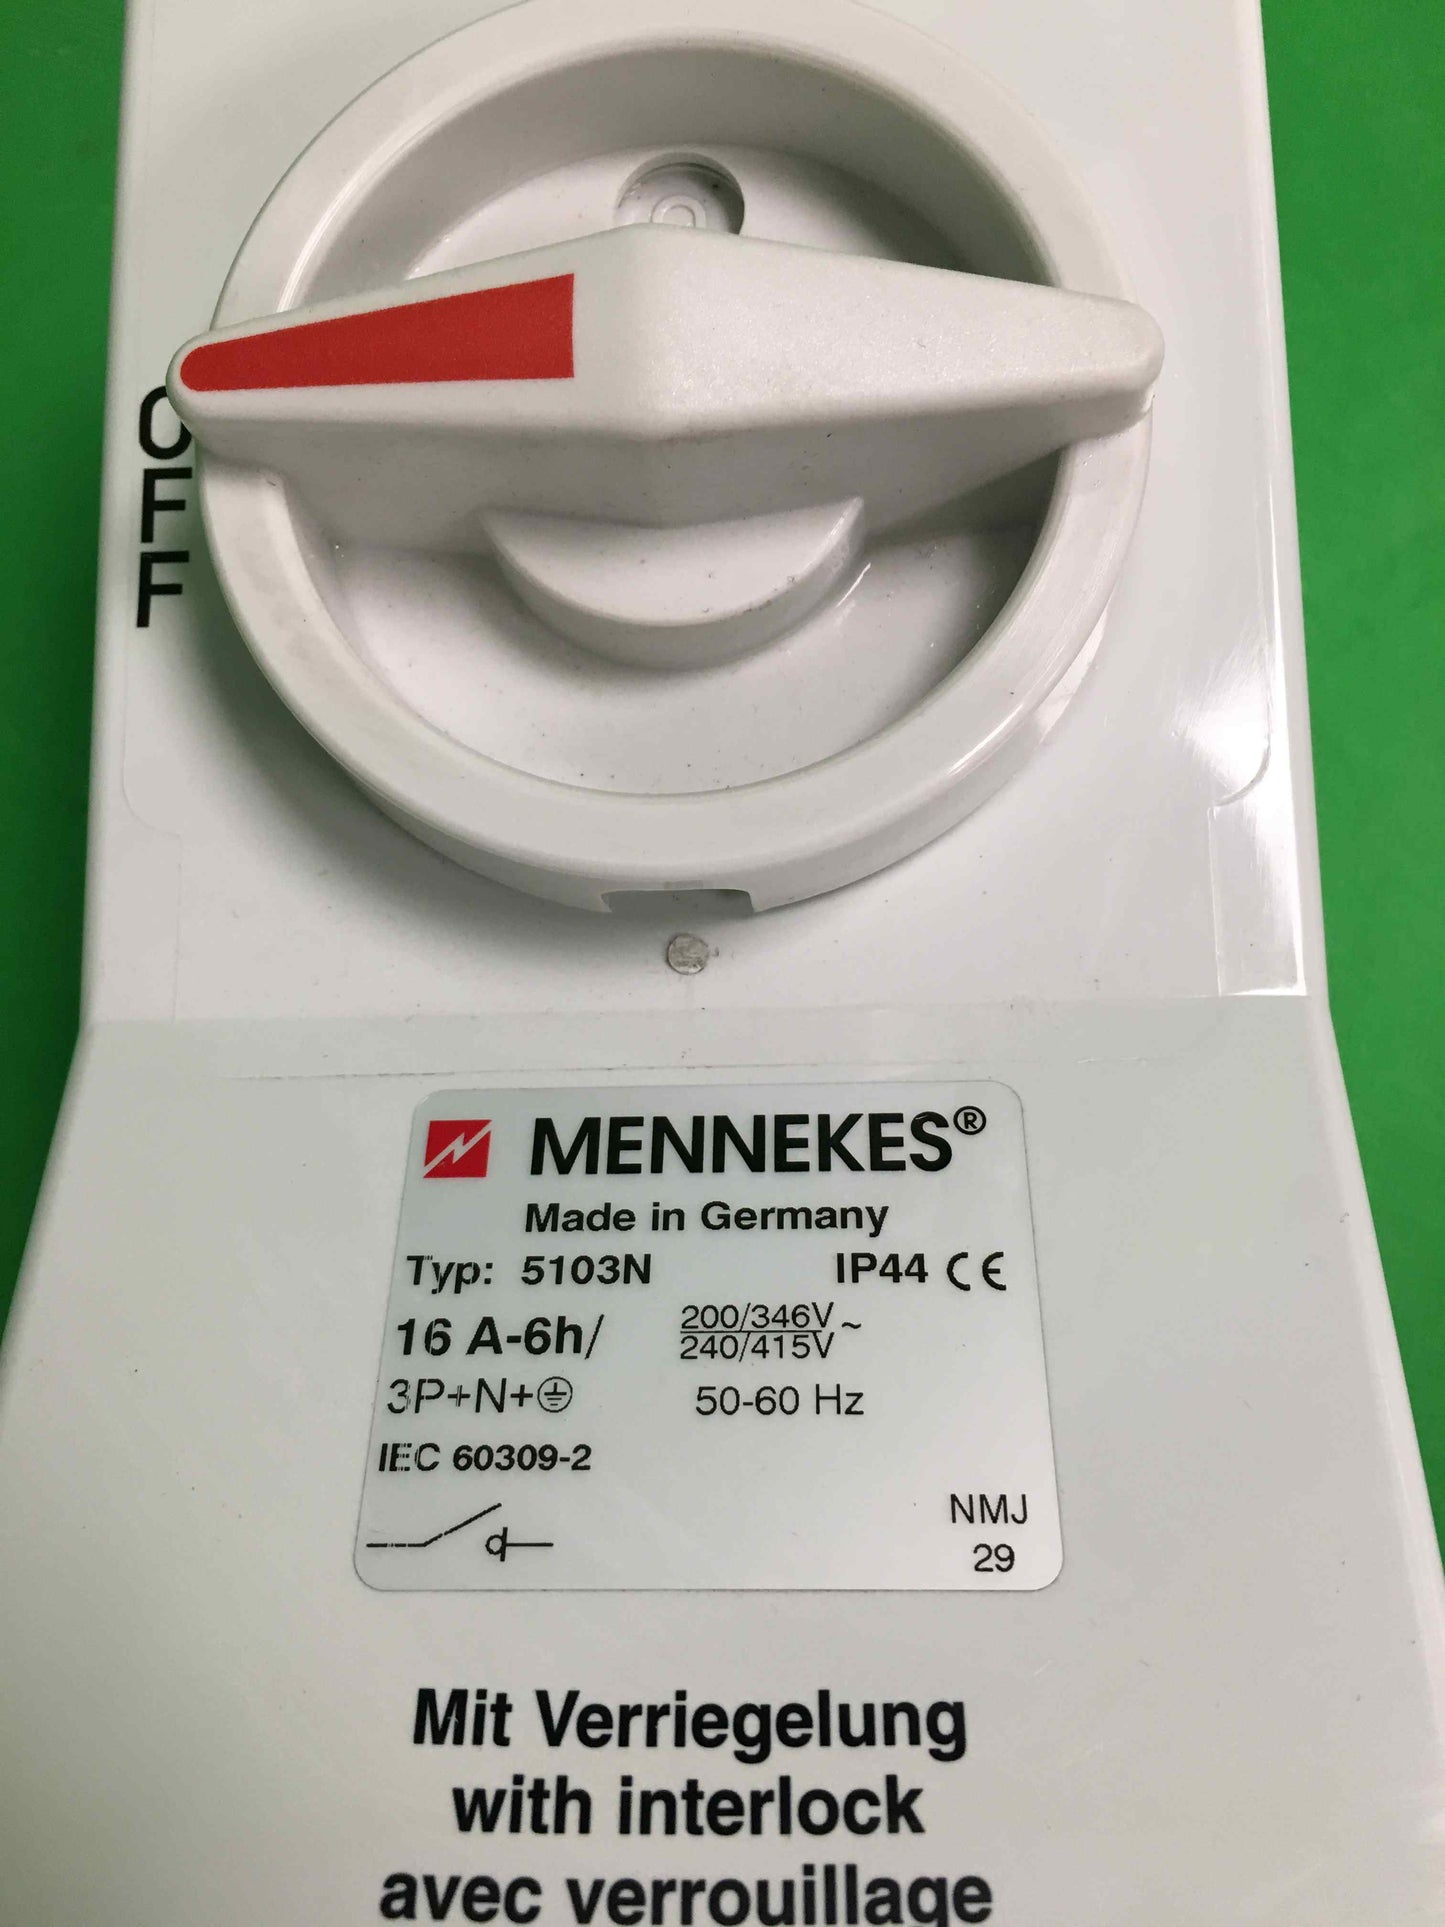 MENNEKES-5103N 16A-6h 3P+N+T/5103N16A6h3PNT